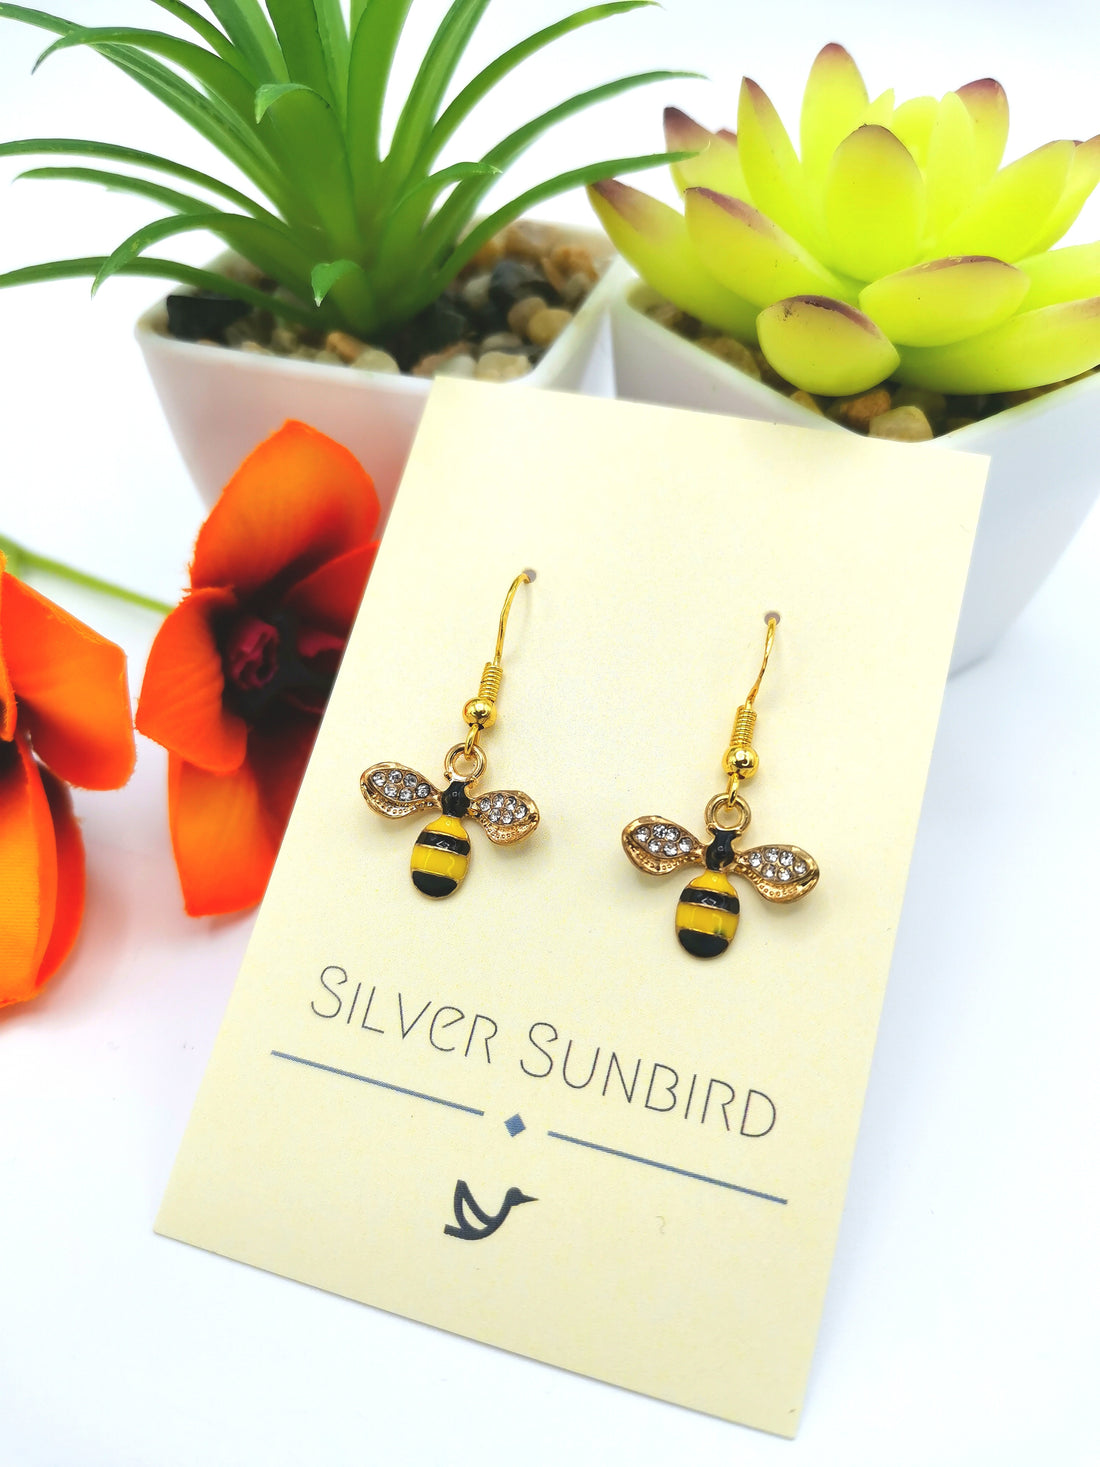 Bee Happy Bee Earrings - Silver Sunbird Silver Rhinestone animal earrings